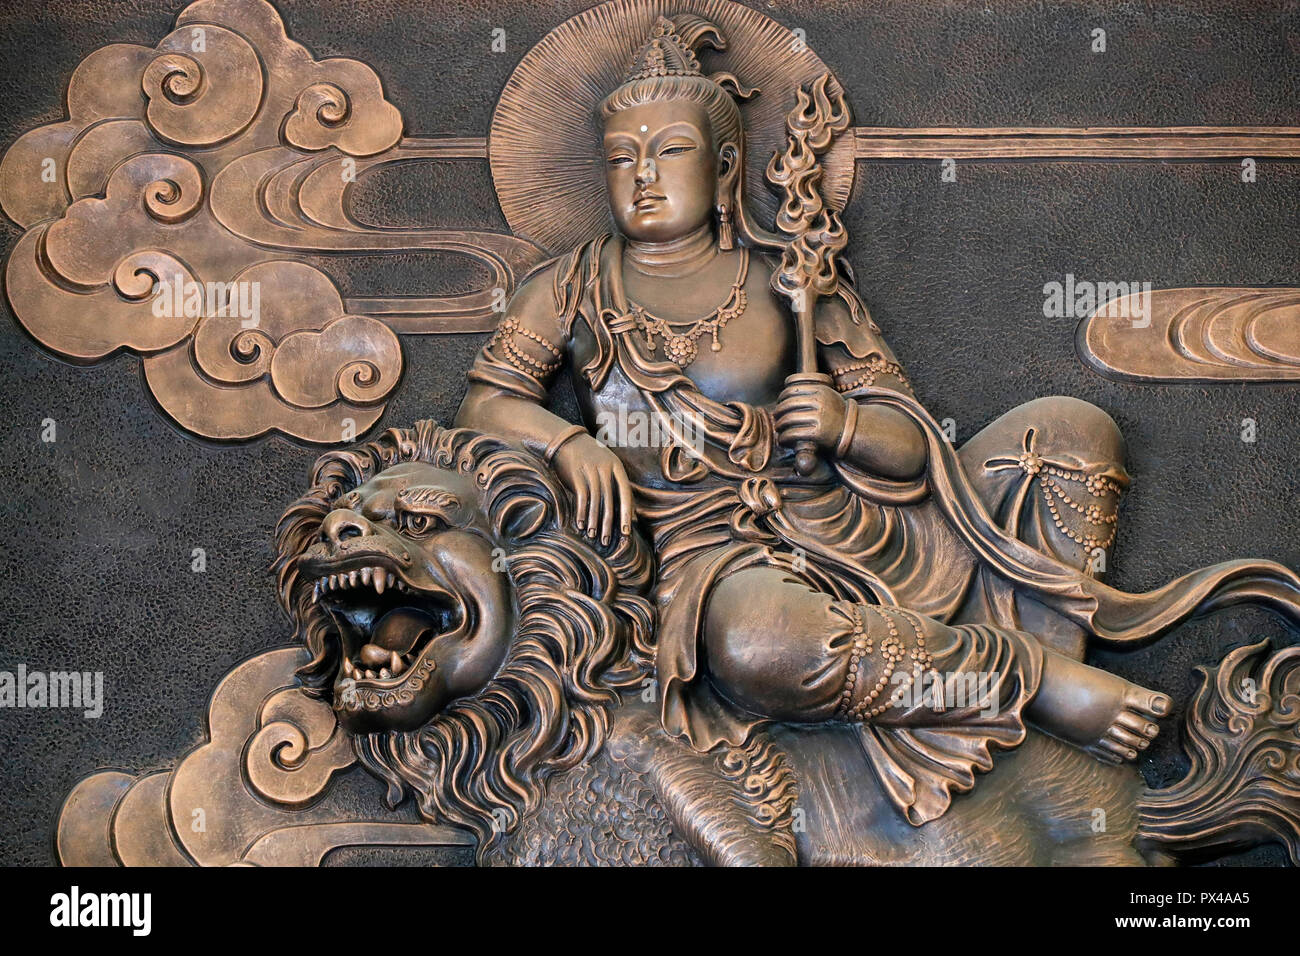 Linh Phong buddhistischer Tempel. Manjusri auf Löwen. Manjusri ist die älteste und bedeutendste Bodhisattva im Mahayana Literatur Dalat. Vietnam. Stockfoto